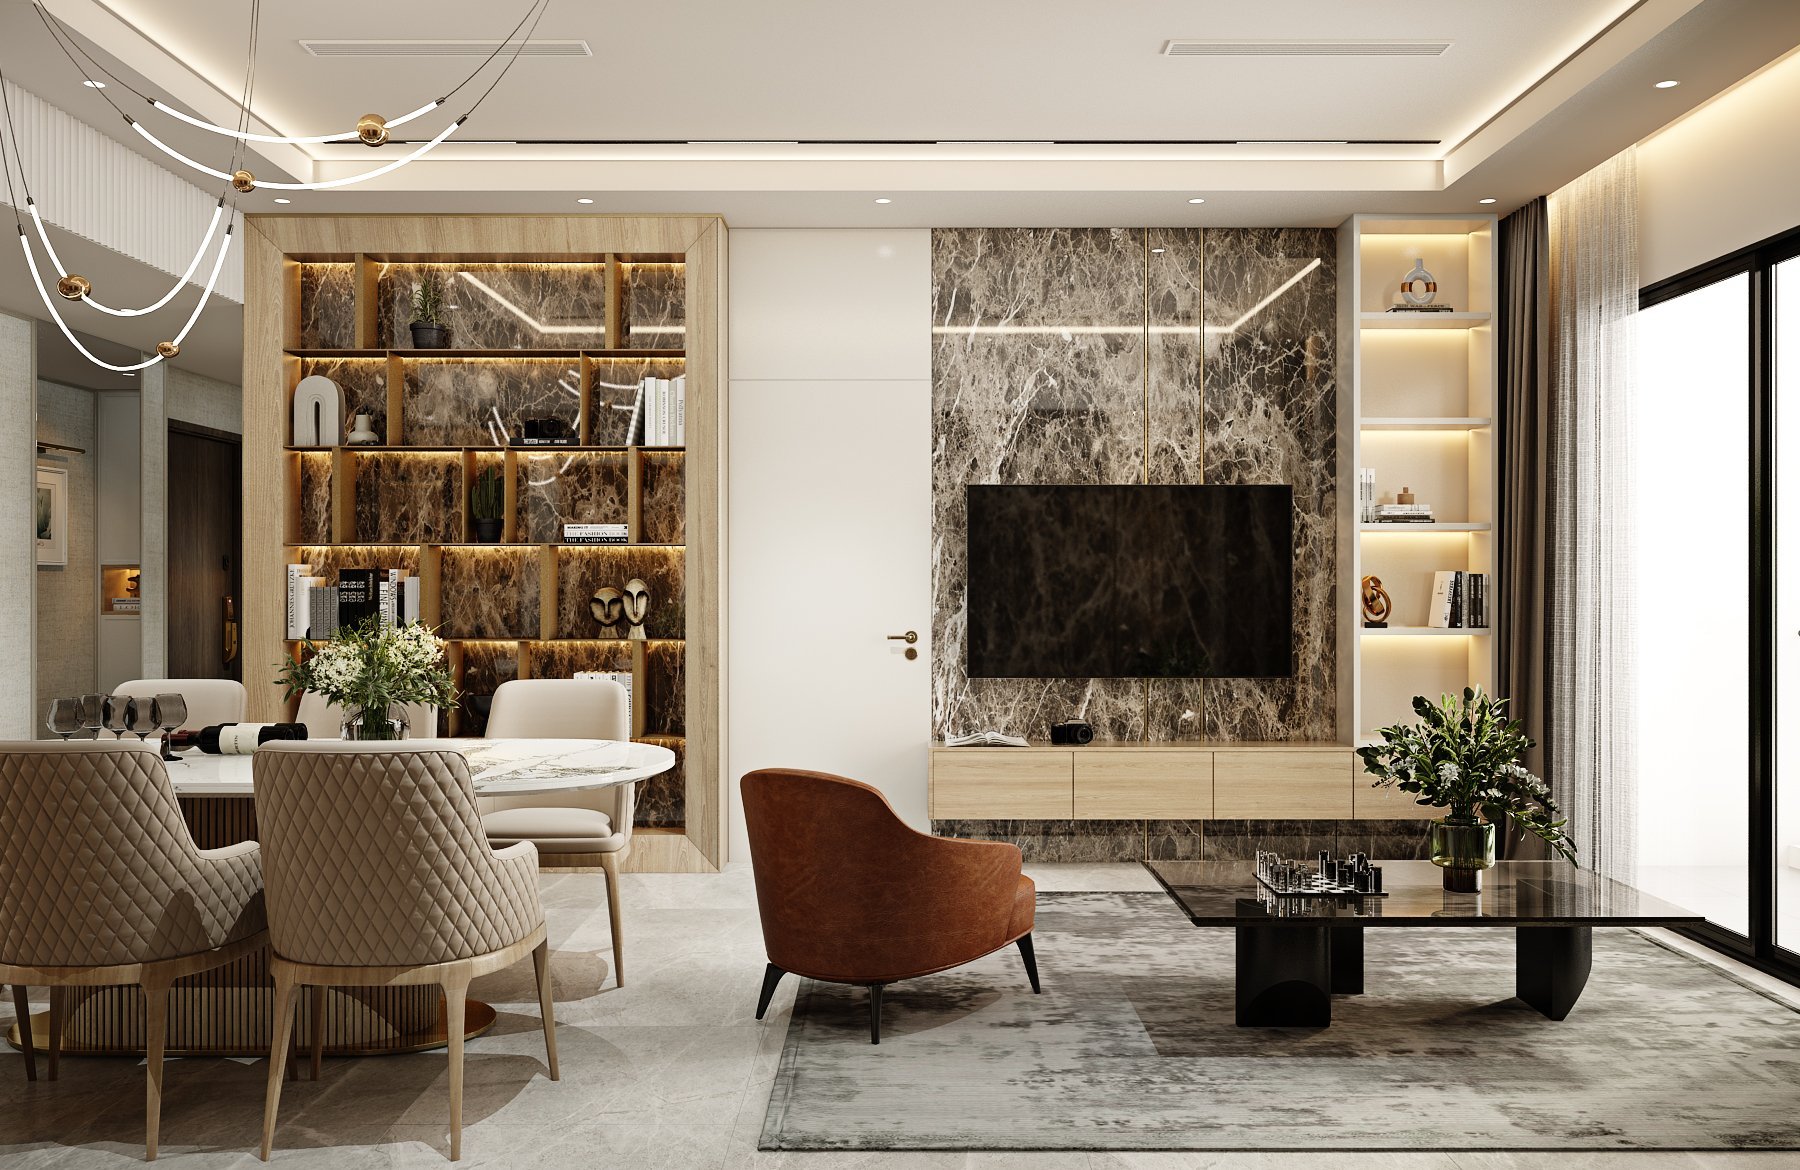 Toàn cảnh phòng khách và phòng ăn được thiết kế thông suốt với nhau, tạo sự liền kề và linh hoạt khi sử dụng giữa các không gian.